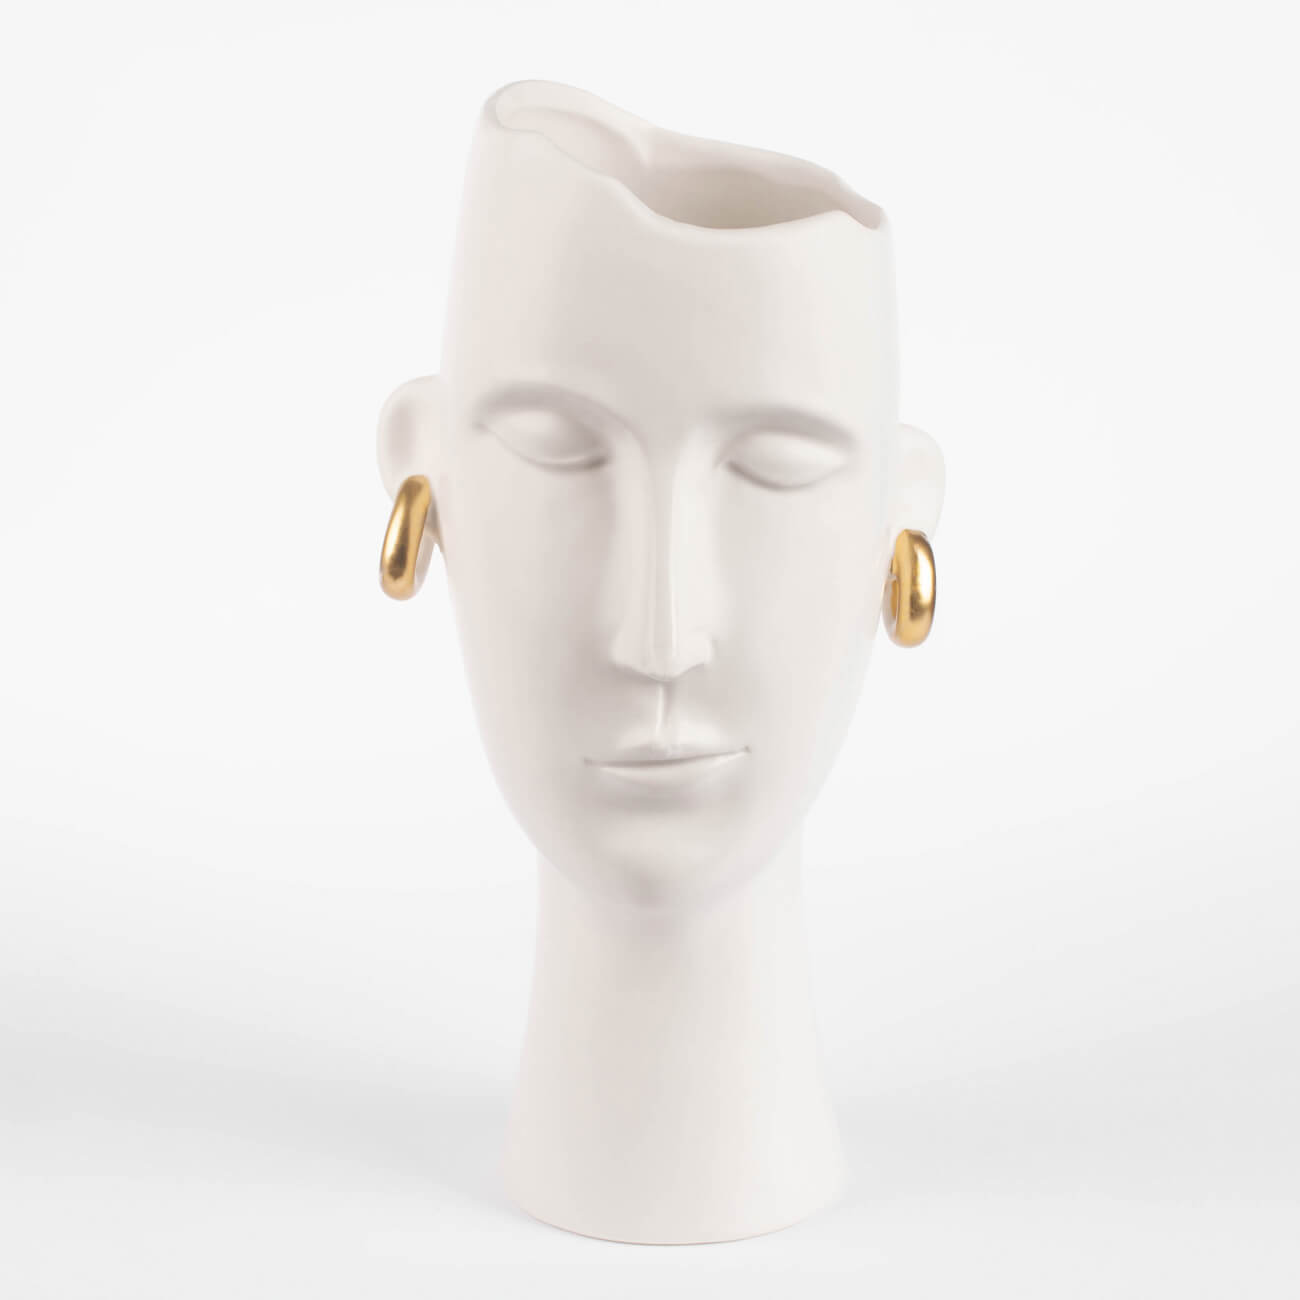 Ваза для цветов, 33 см, декоративная, керамика, белая, Девушка в золотистых сережках, Face изображение № 1